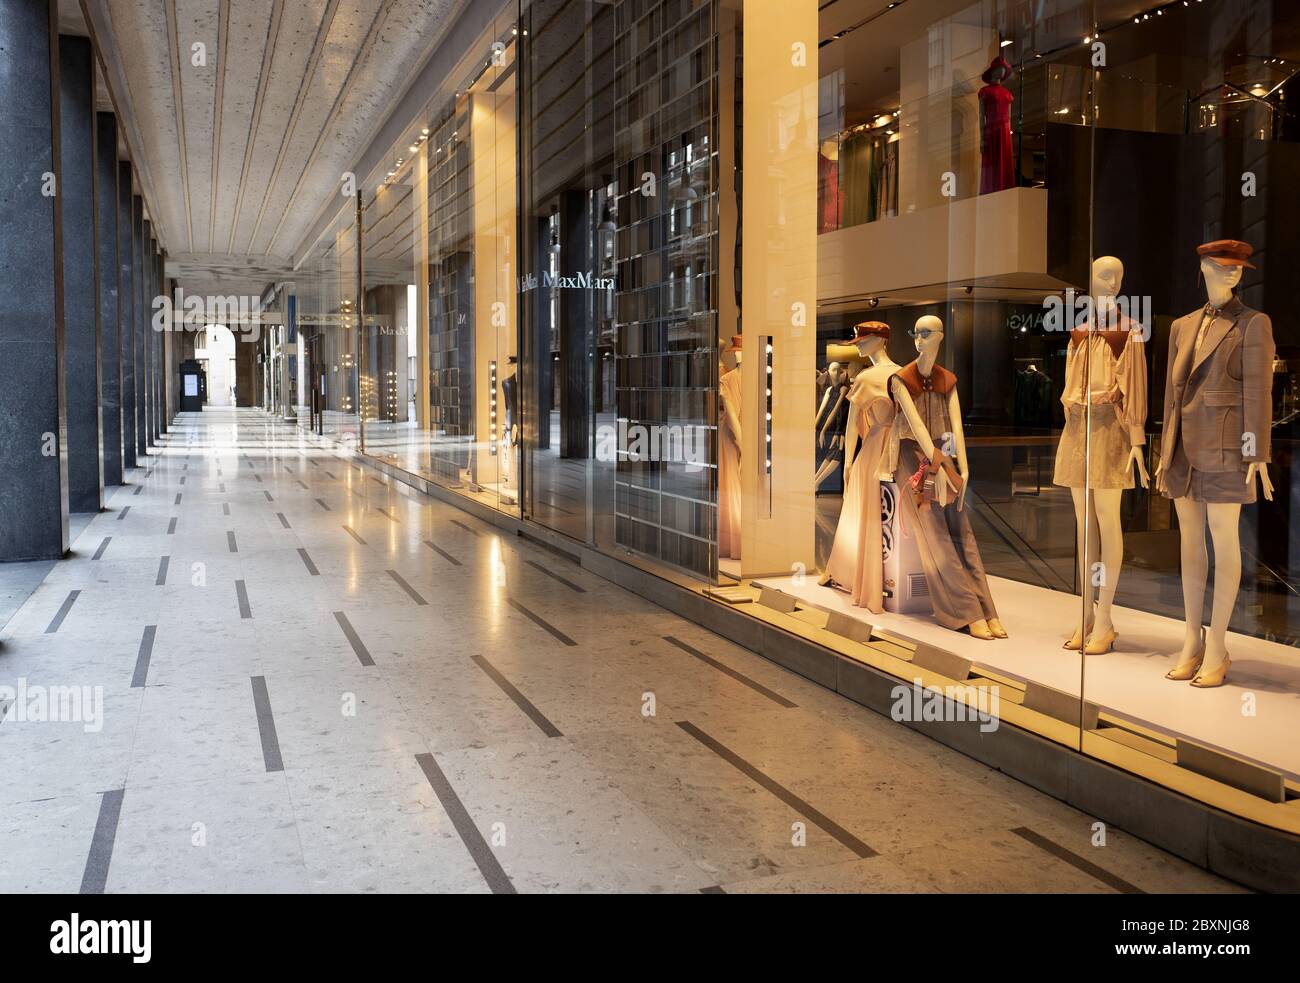 Negozi di moda chiusi in via Vittorio Emanuele, durante la chiusura a causa del Coronavirus, a Milano. Foto Stock